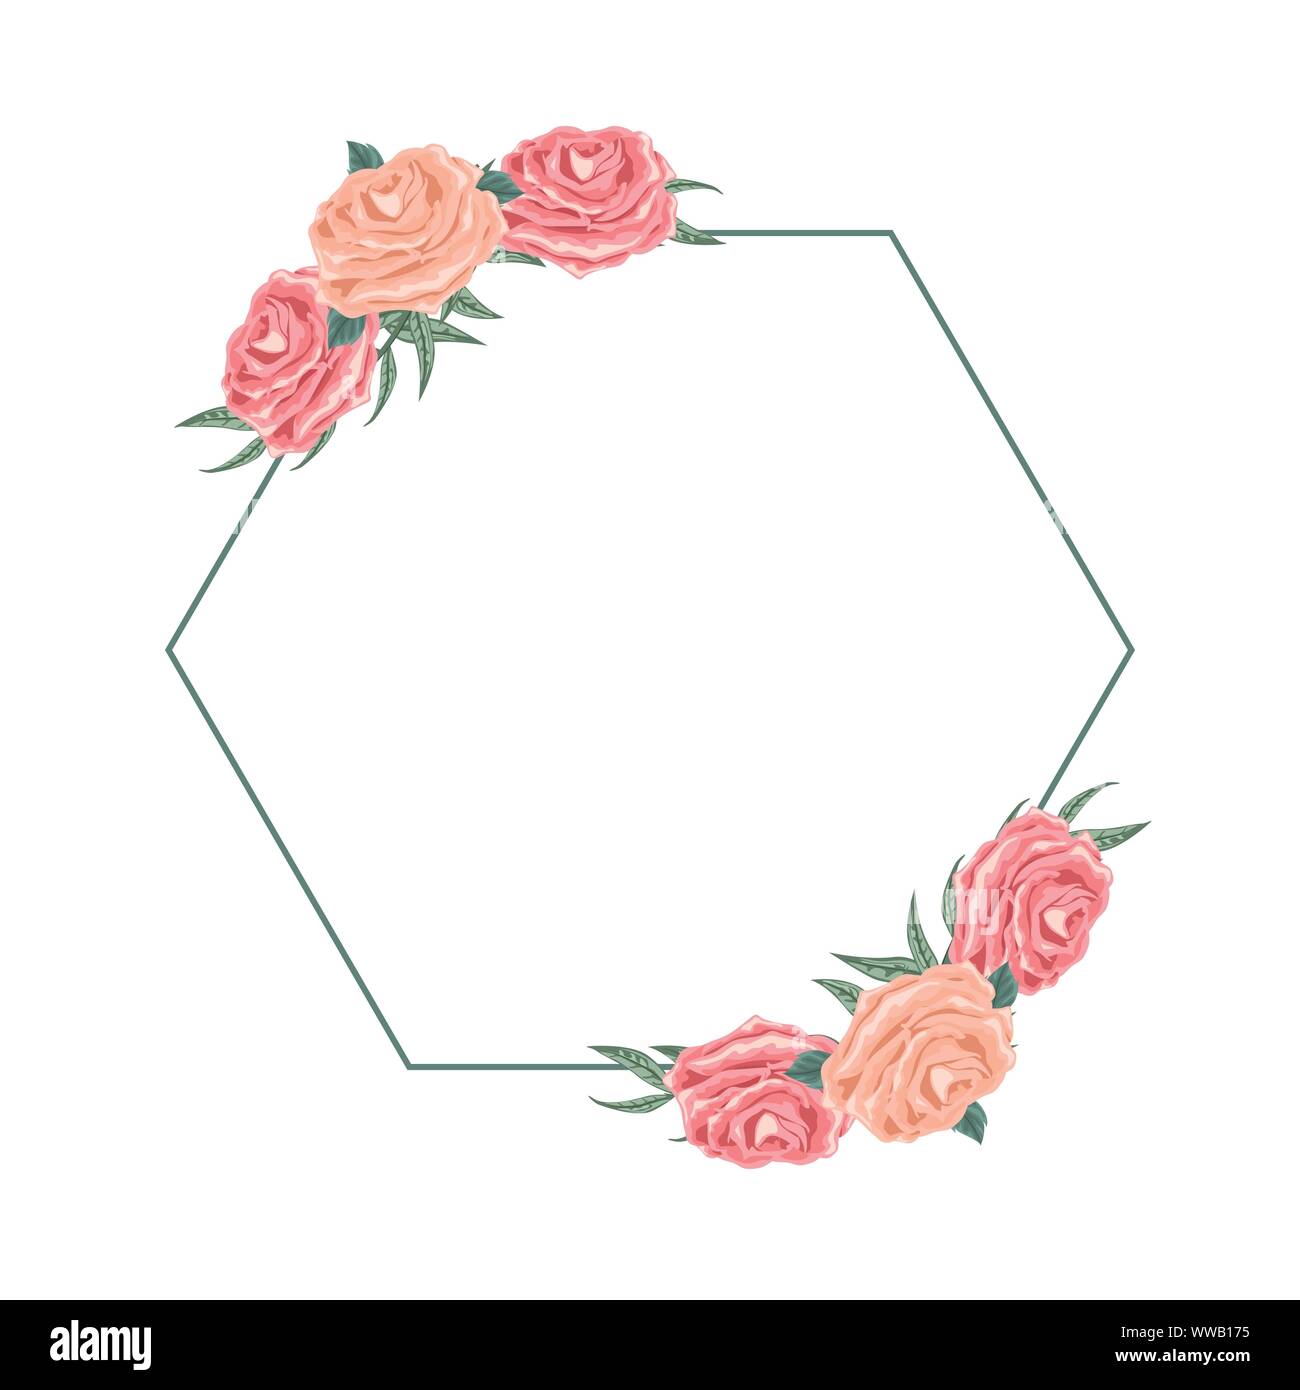 Beautiful hexagon floral arrangement for dedication Stock Vector